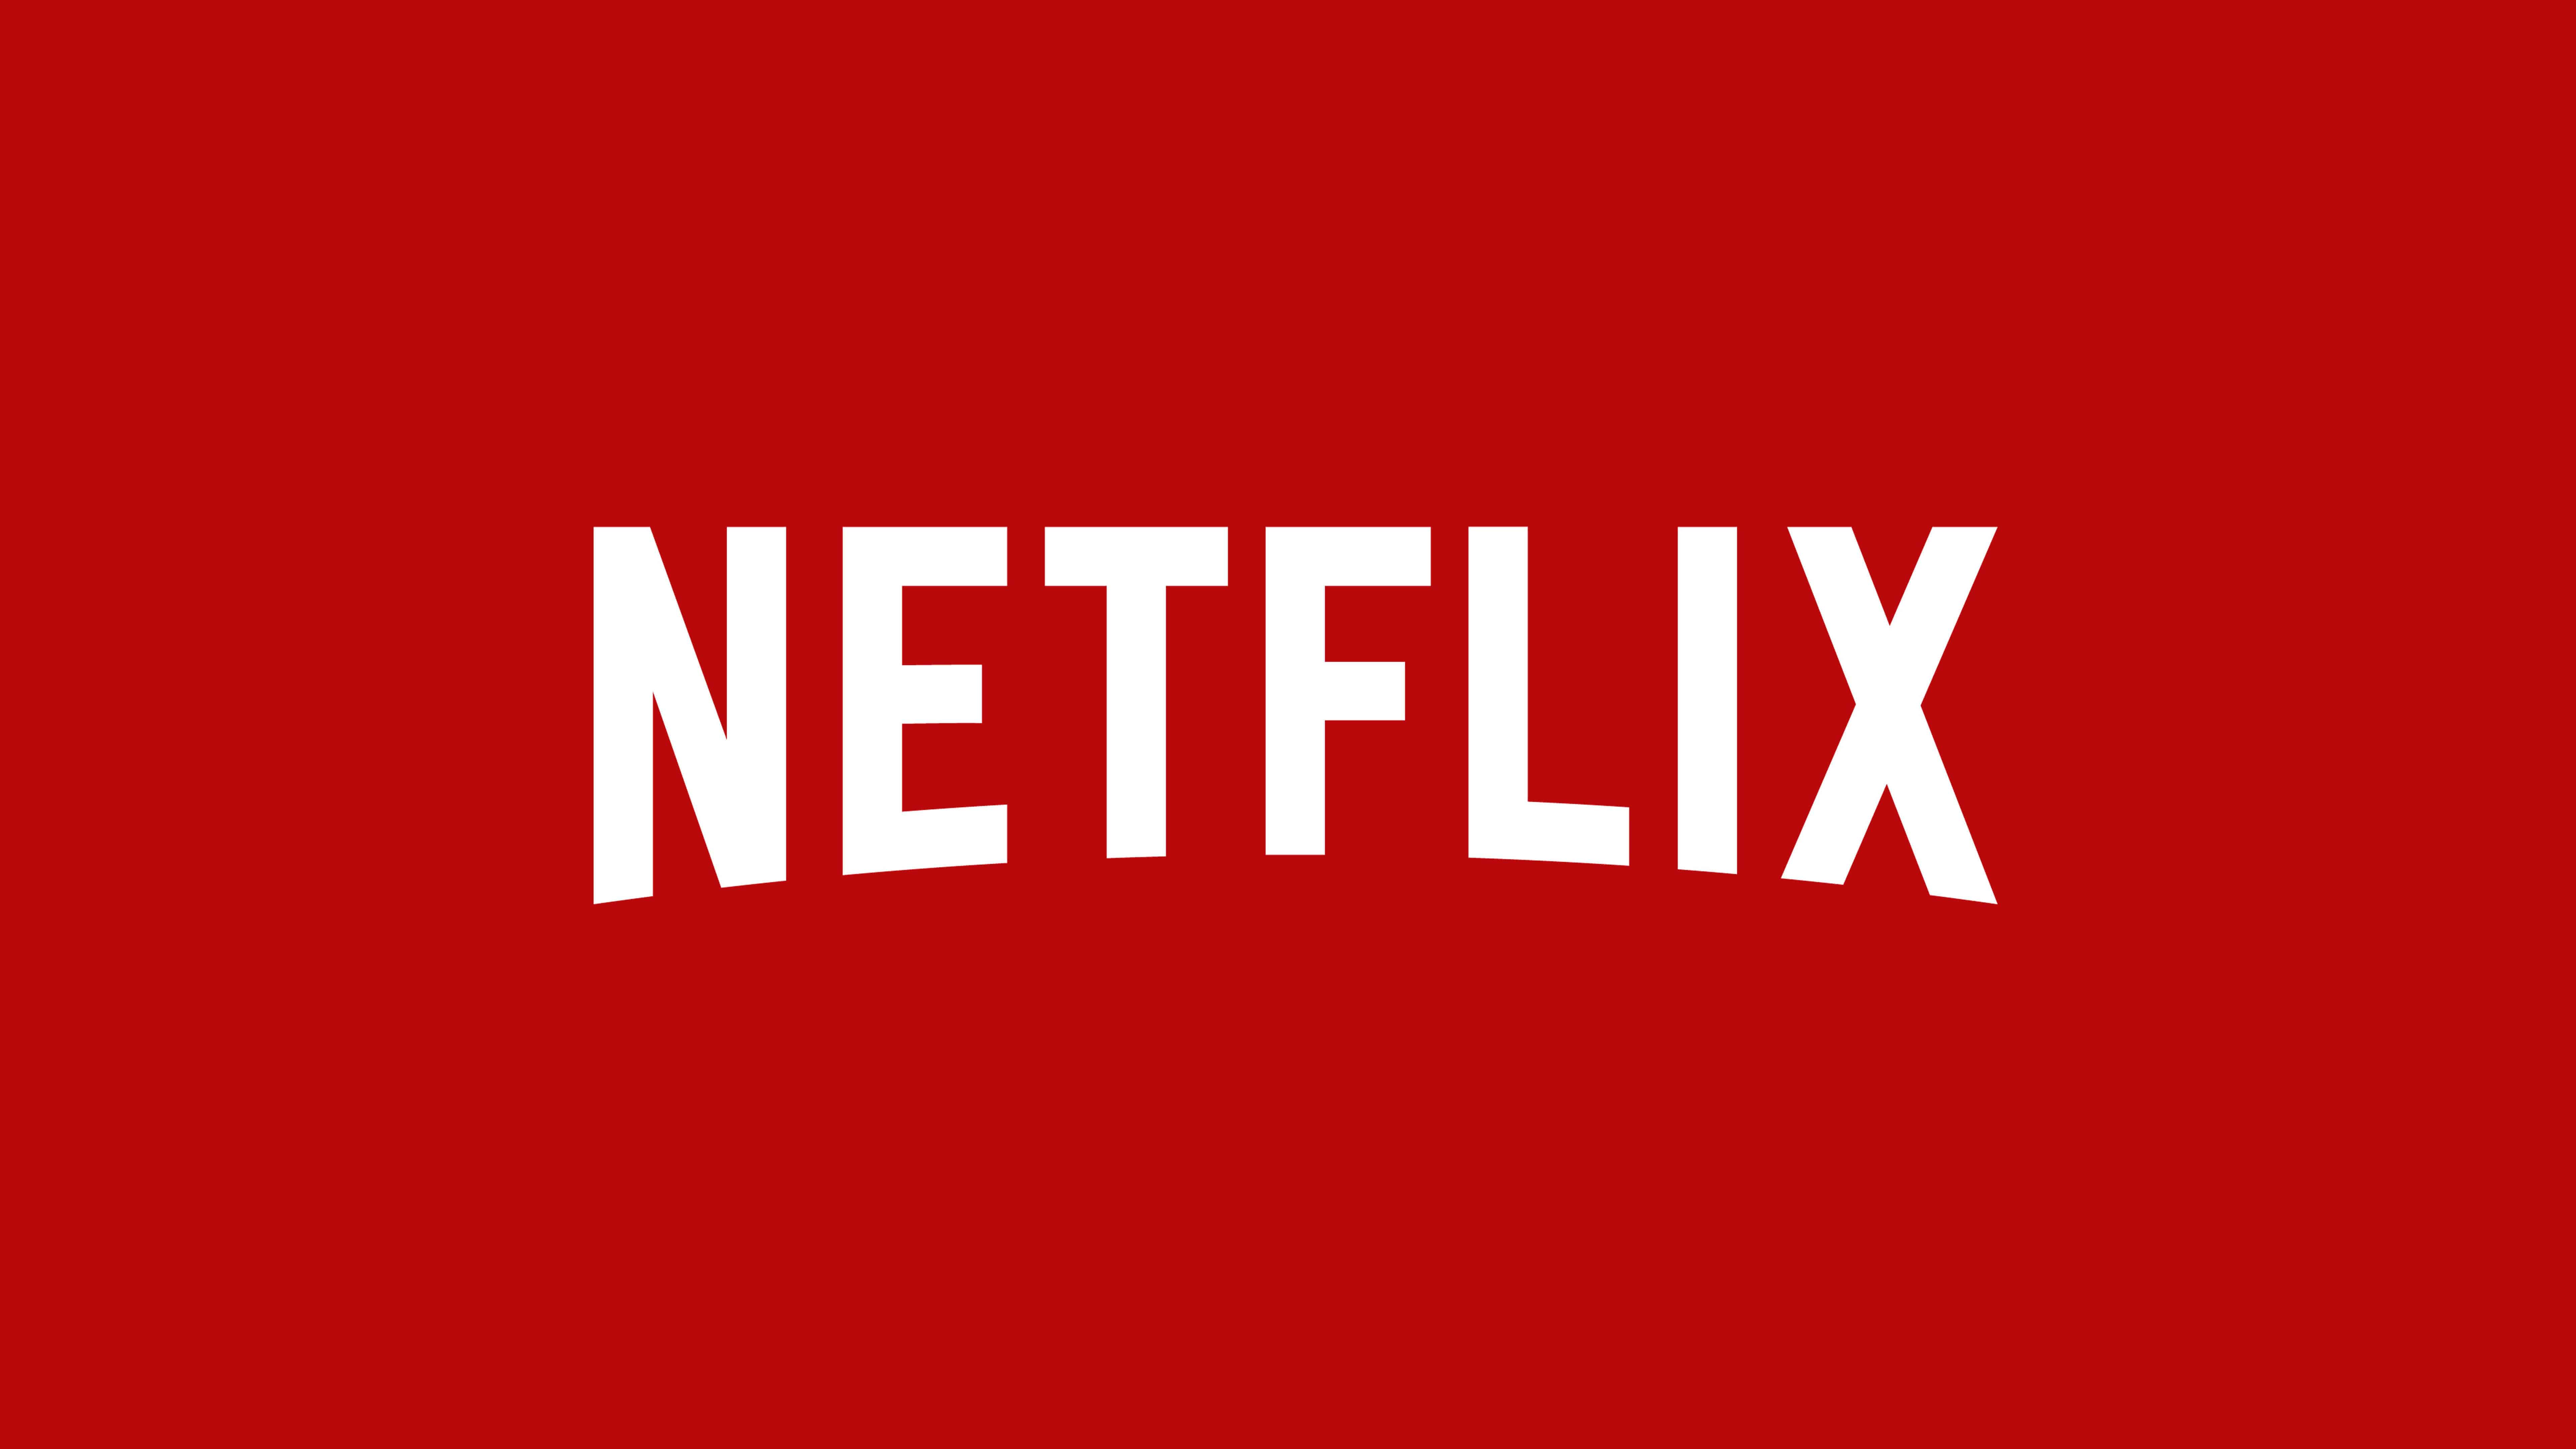 Netflix Desktop Wallpaper Free Netflix Desktop